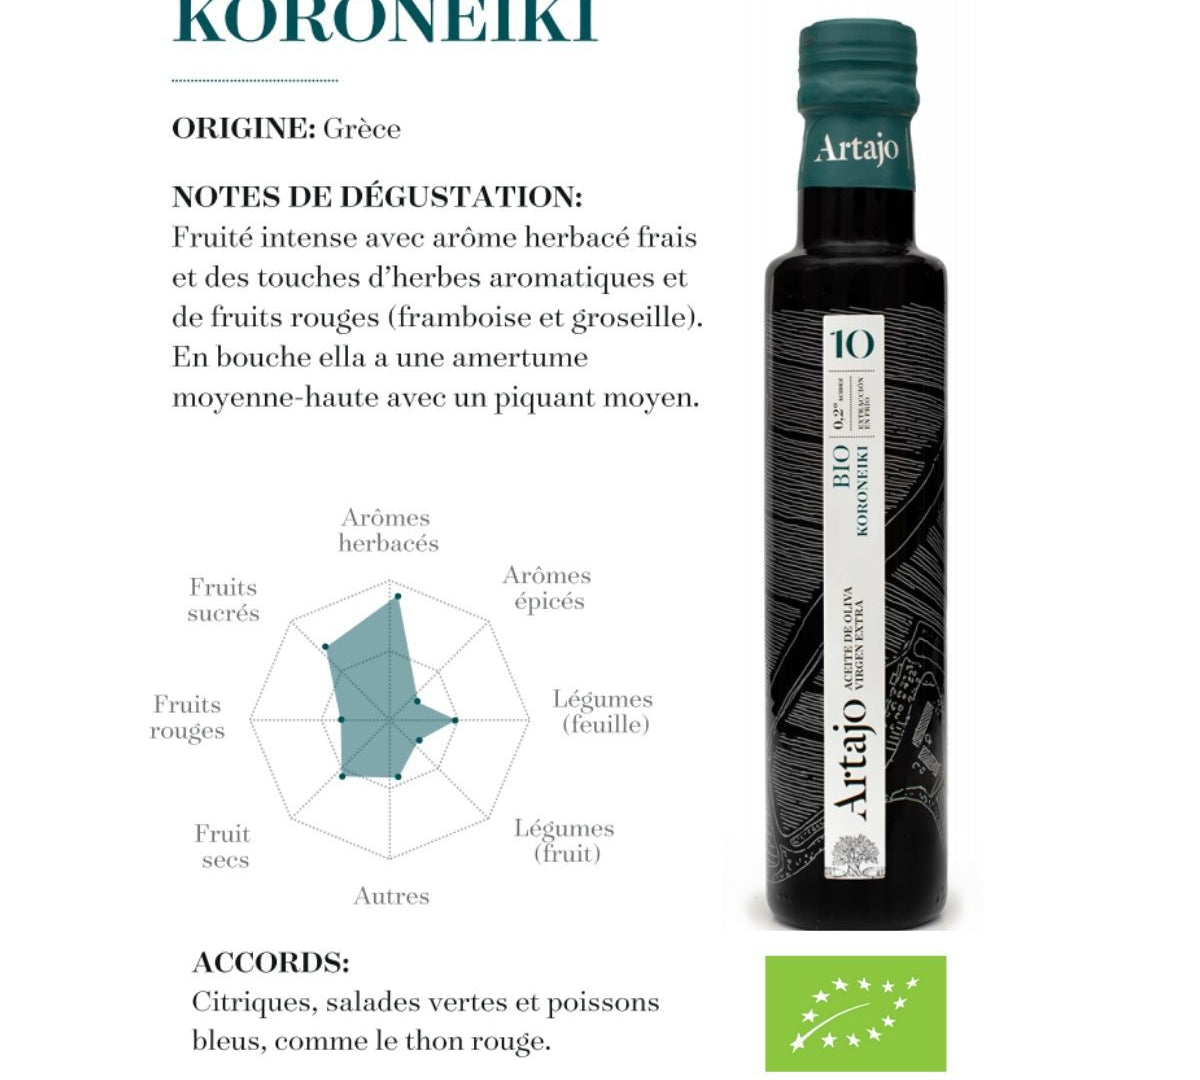 Notes de dégustation de notre huile d'olive BIO Koroneiki